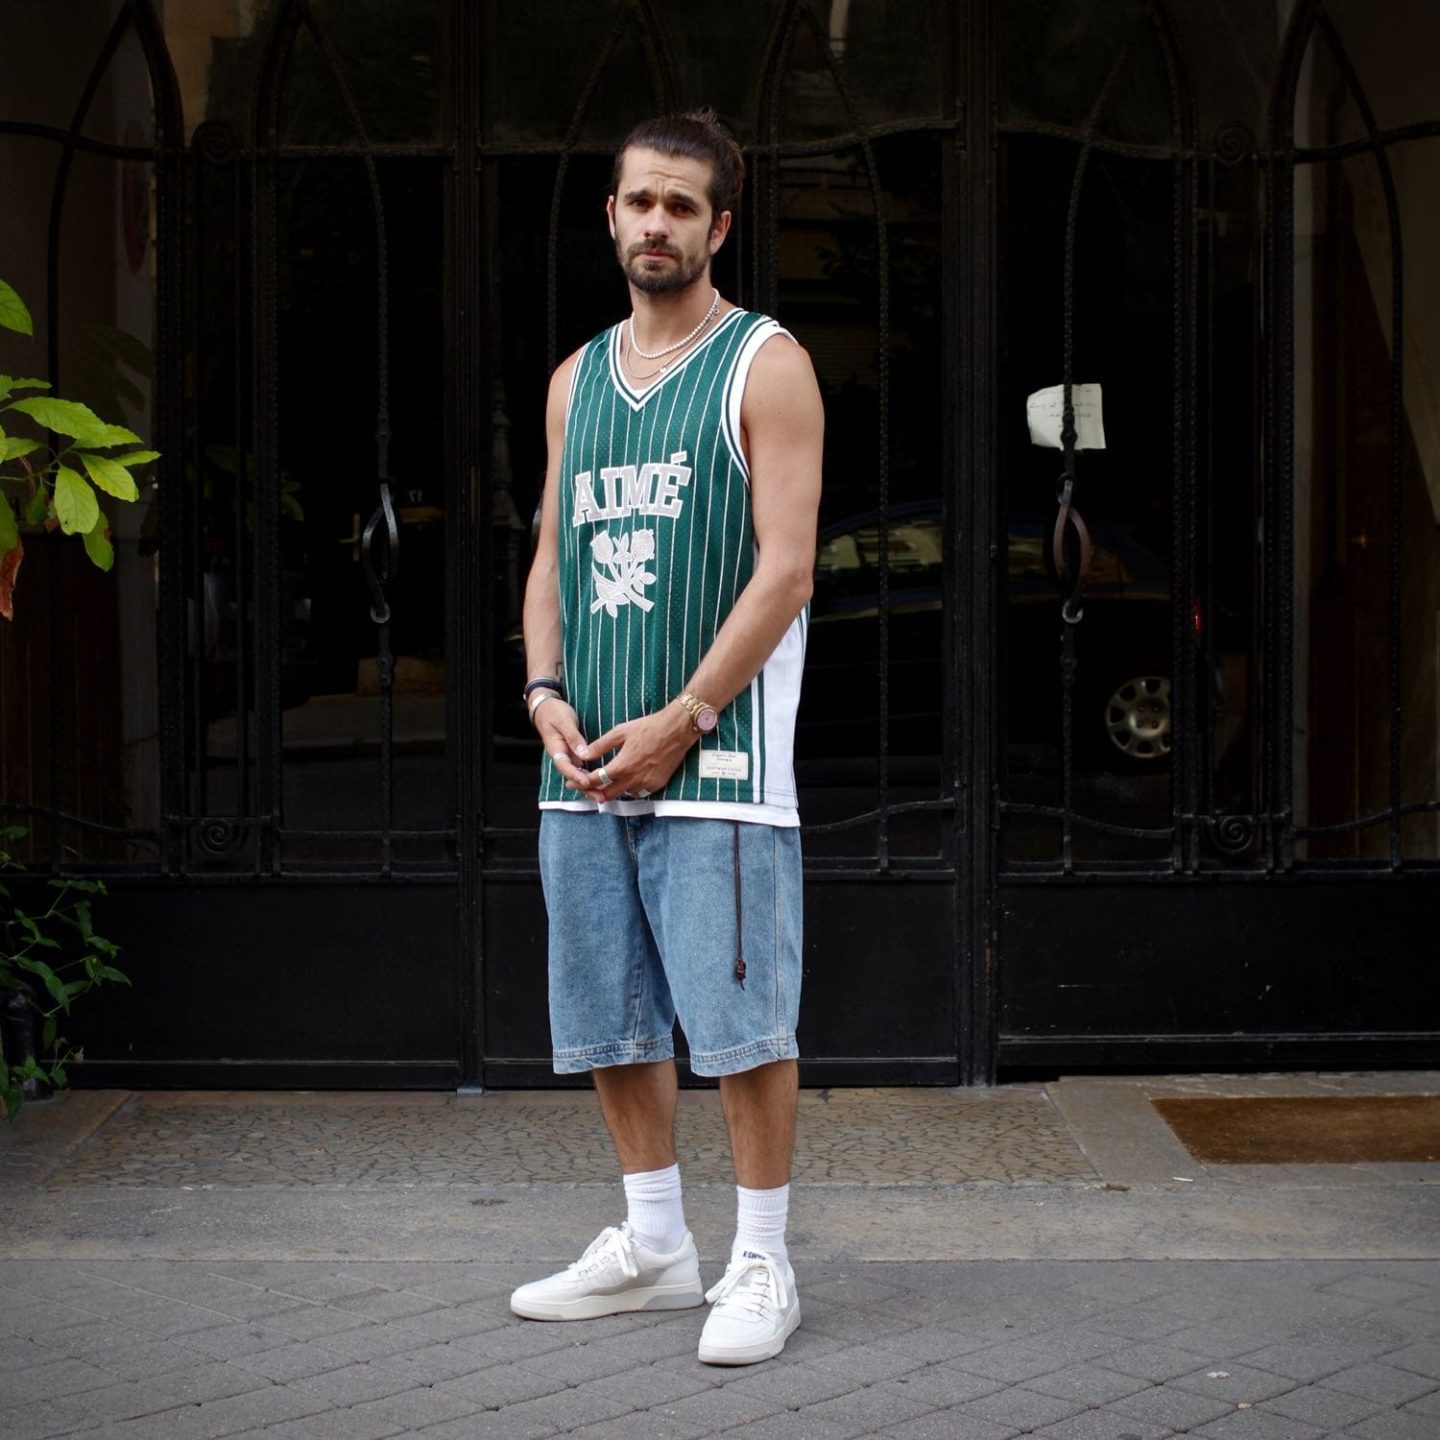 comment porter un maillot de basket dans un look streetwear 